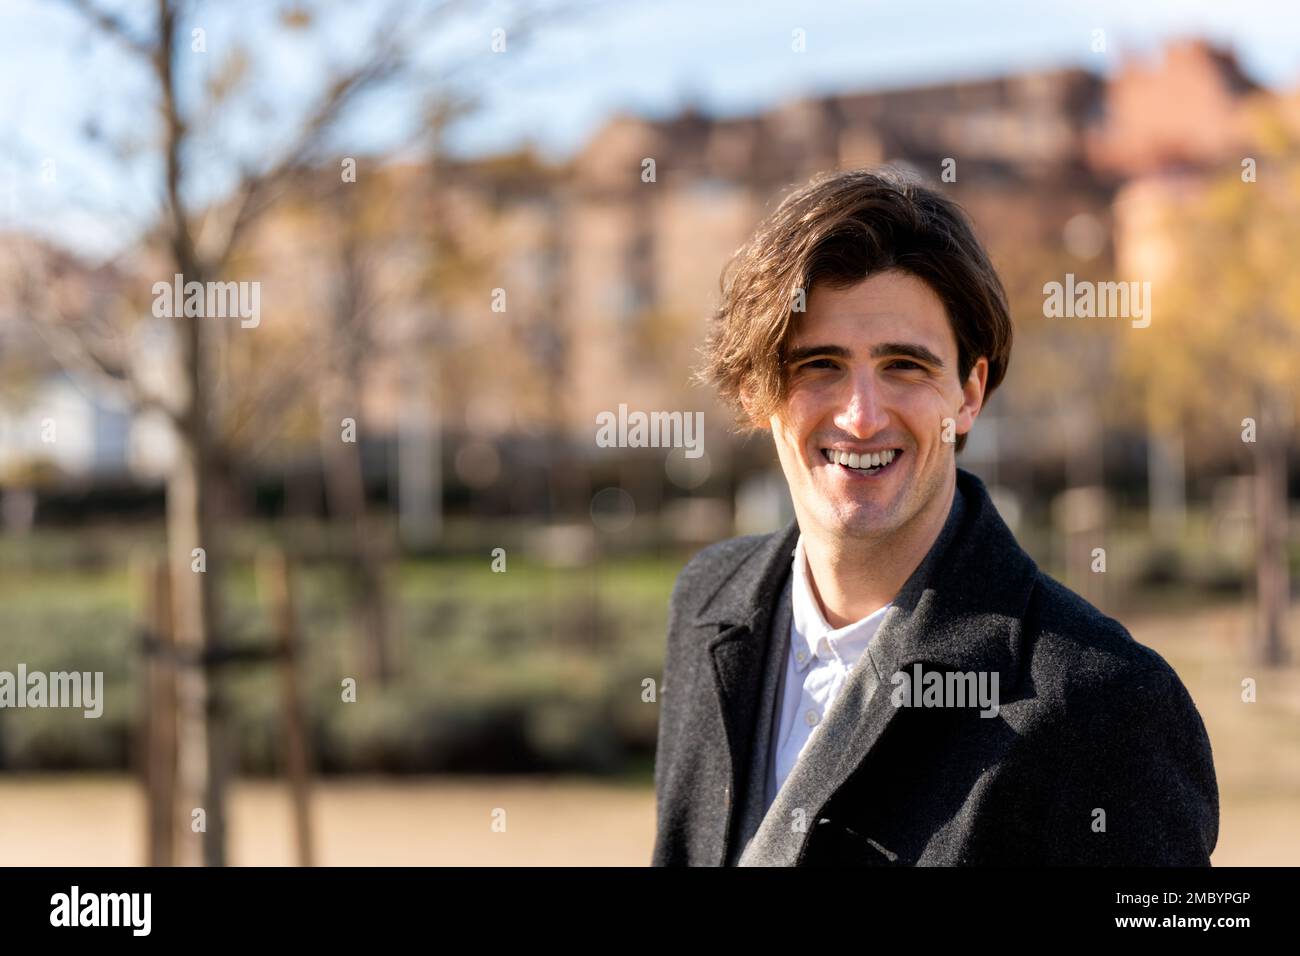 Fröhlicher junger Geschäftsmann in stilvollen Outfits, der lächelt und vor die Kamera schaut, während er Zeit im Park verbringt Stockfoto